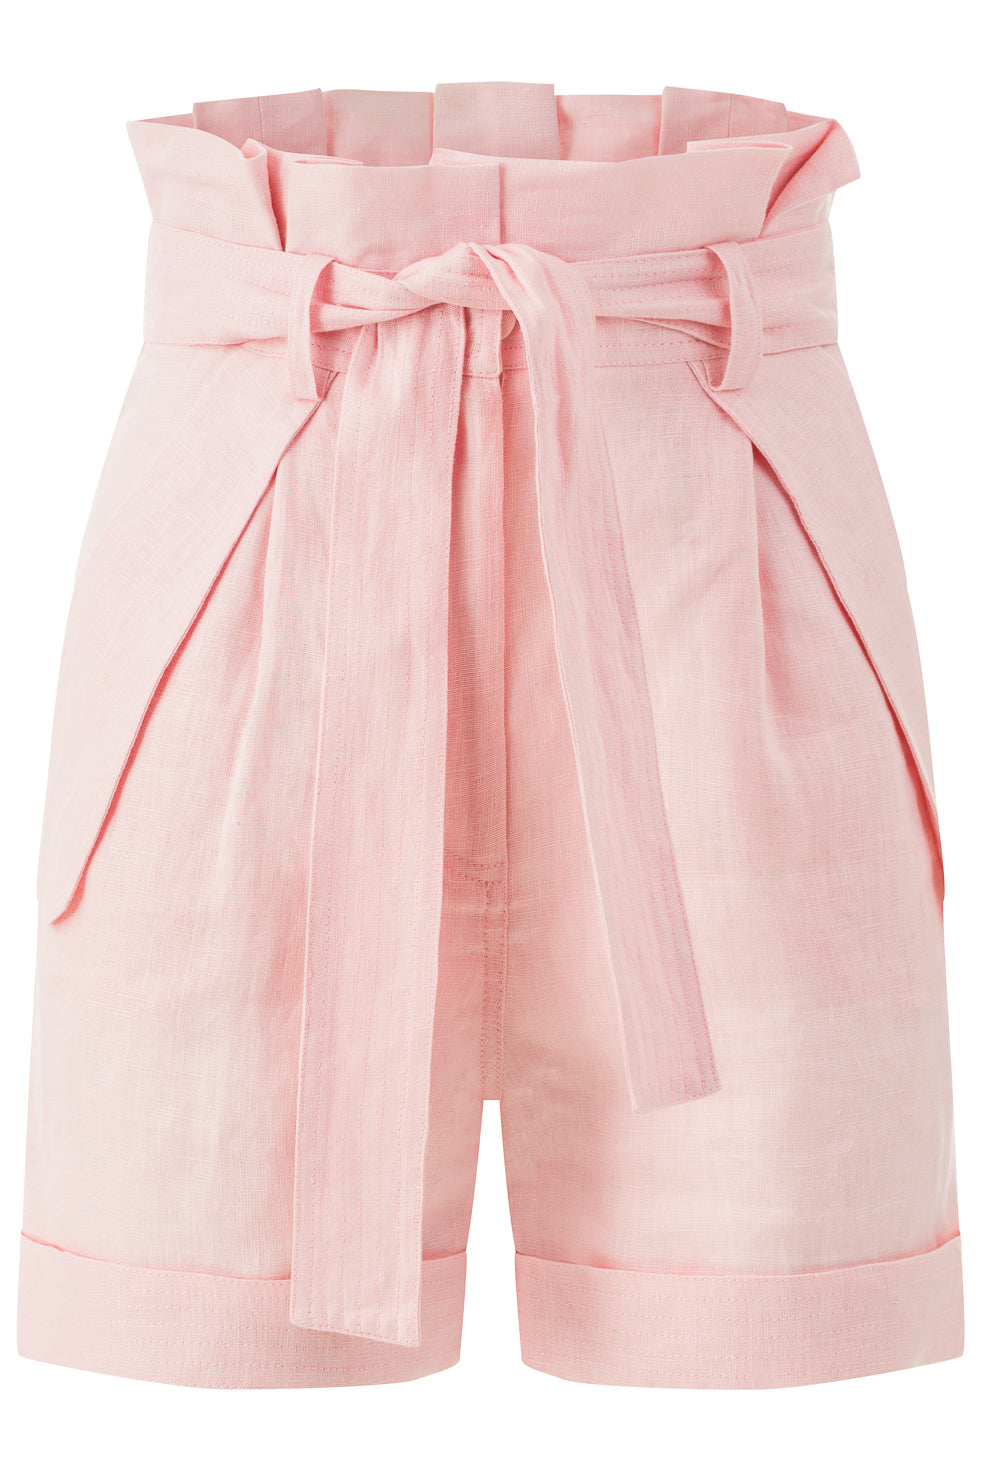 Ira Pink Linen Shorts